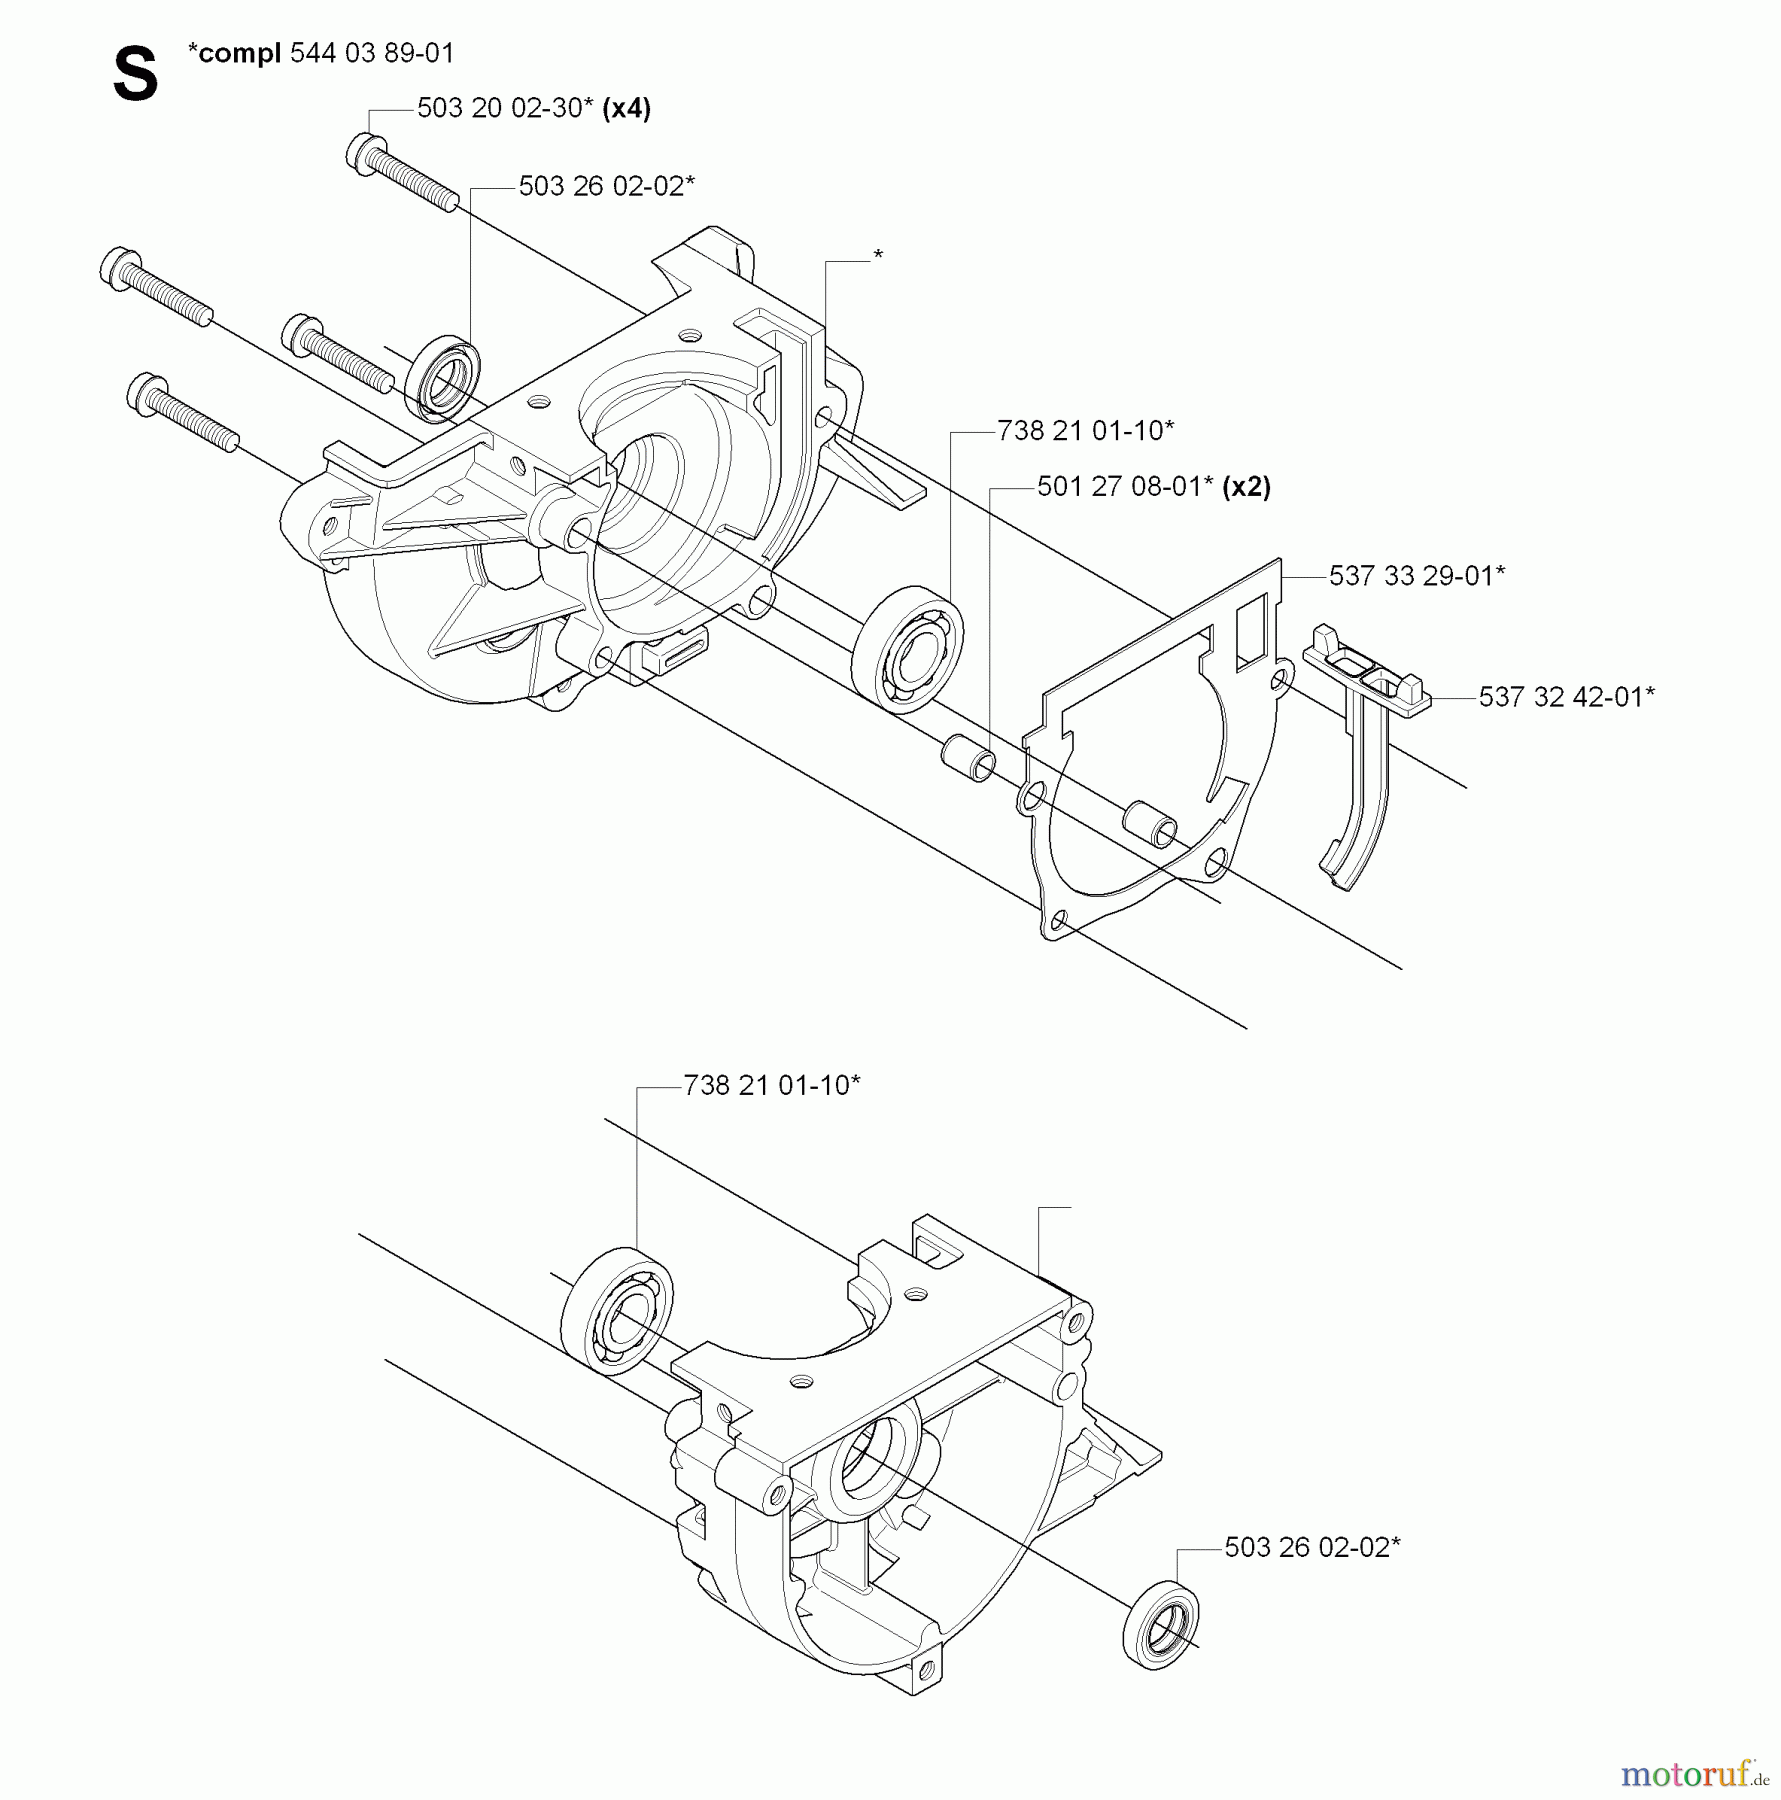  Jonsered Motorsensen, Trimmer GC2236 - Jonsered String/Brush Trimmer (2008-09) CRANKCASE